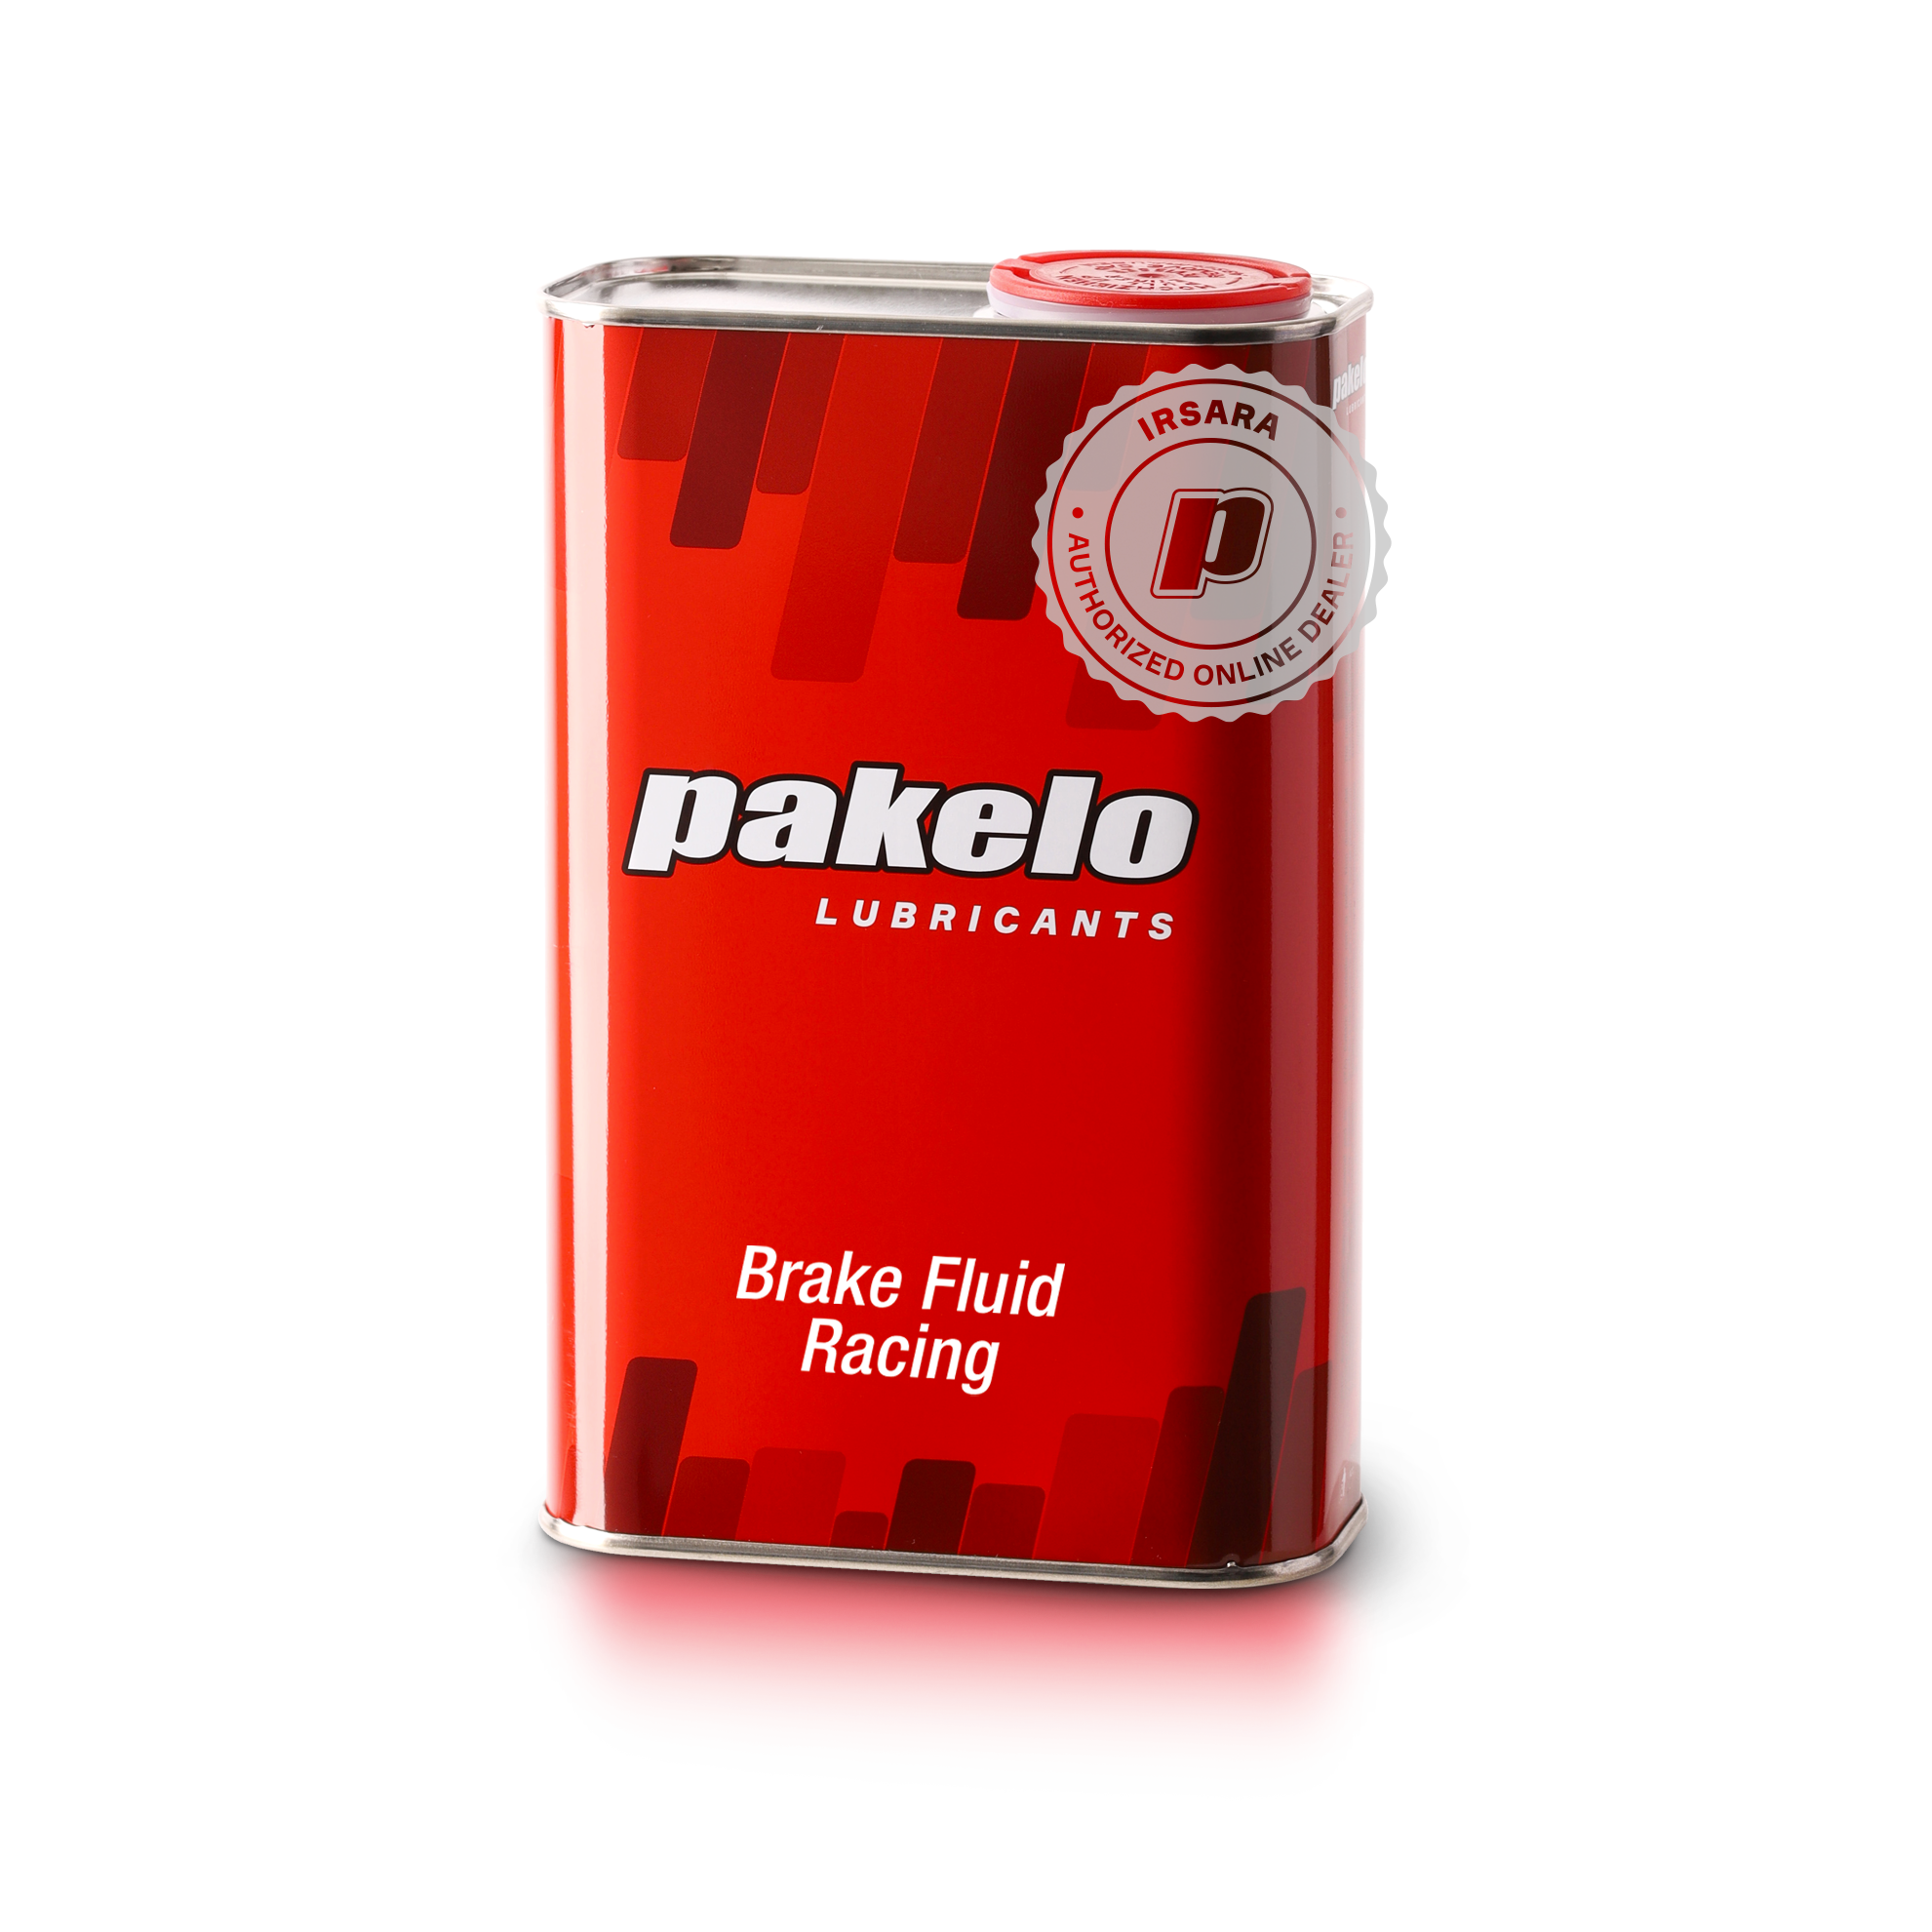 PAKELO BRAKE FLUID RACING (1 L)